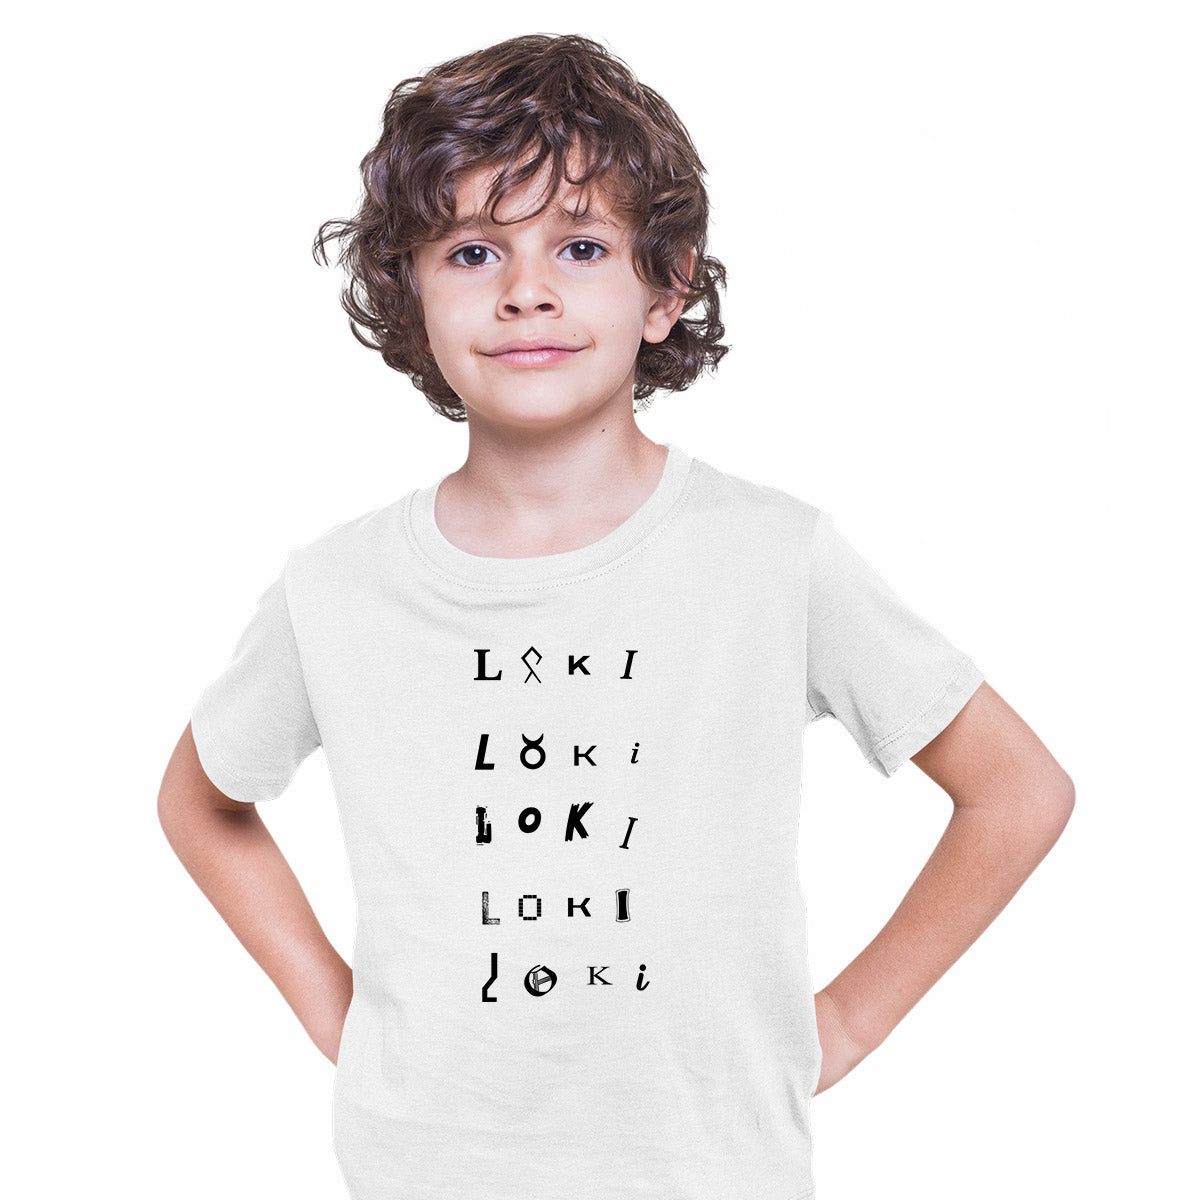 Loki TVA 2 Emblem White T-shirt Tom Hiddleston Sylvie for Kids